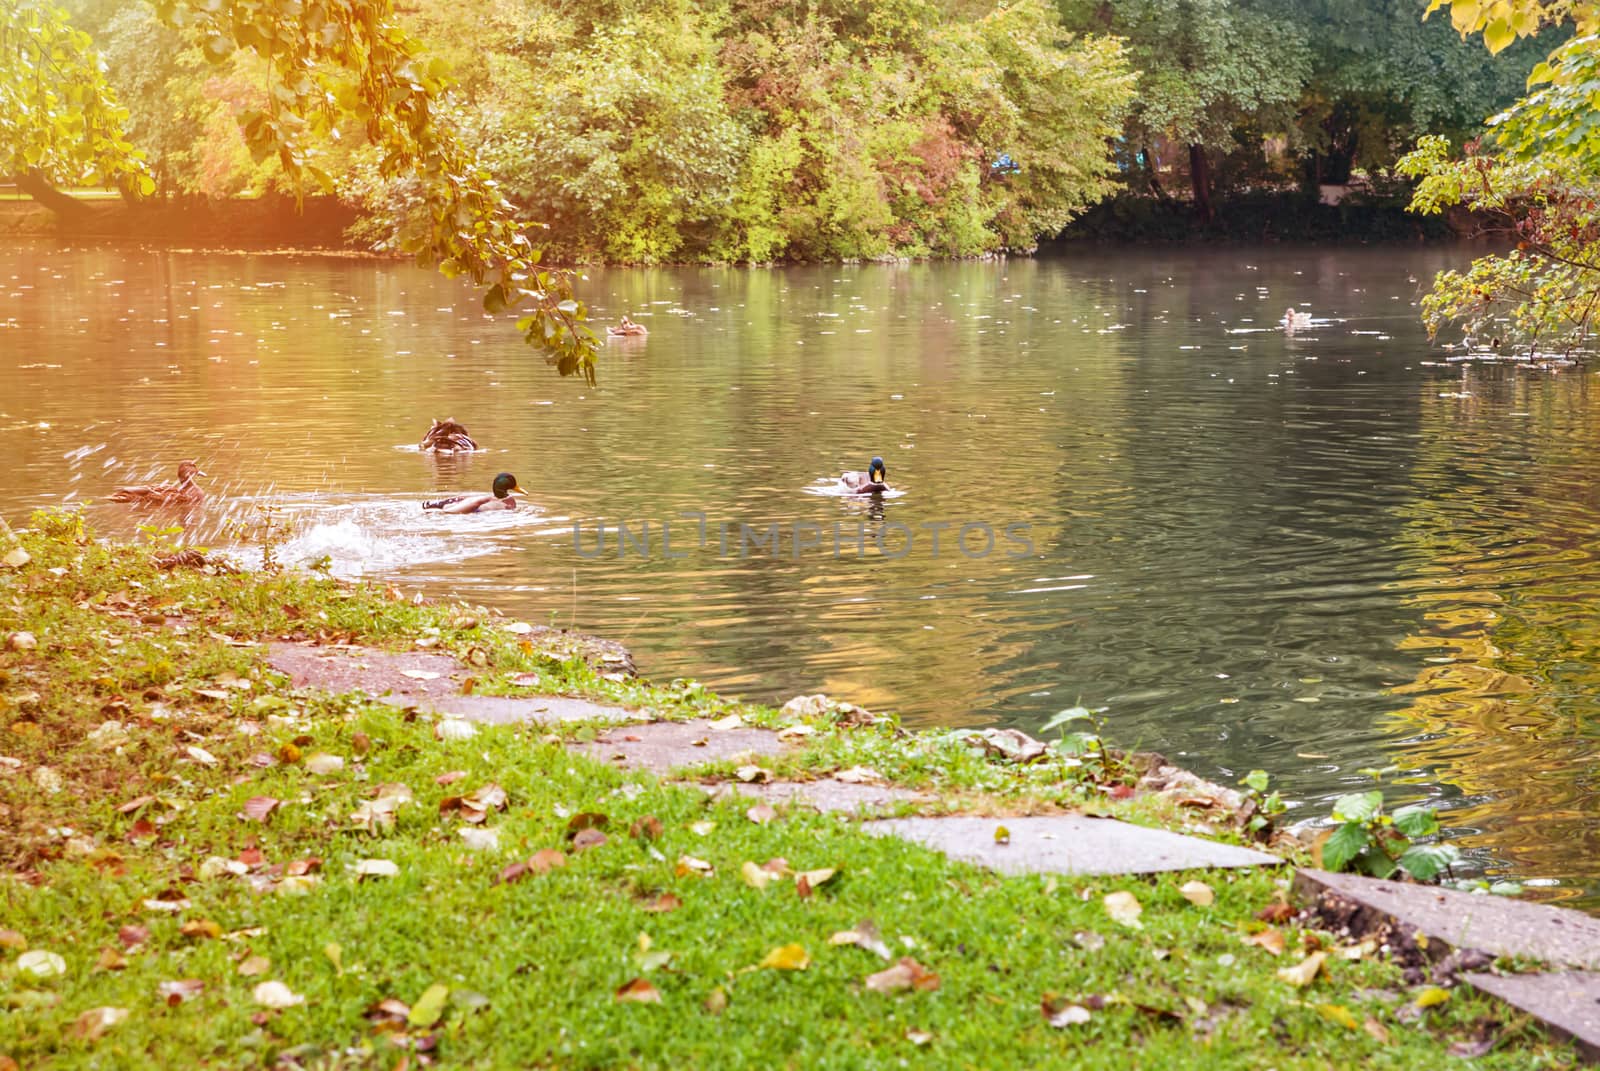 Autumn season and wild ducks on the lake